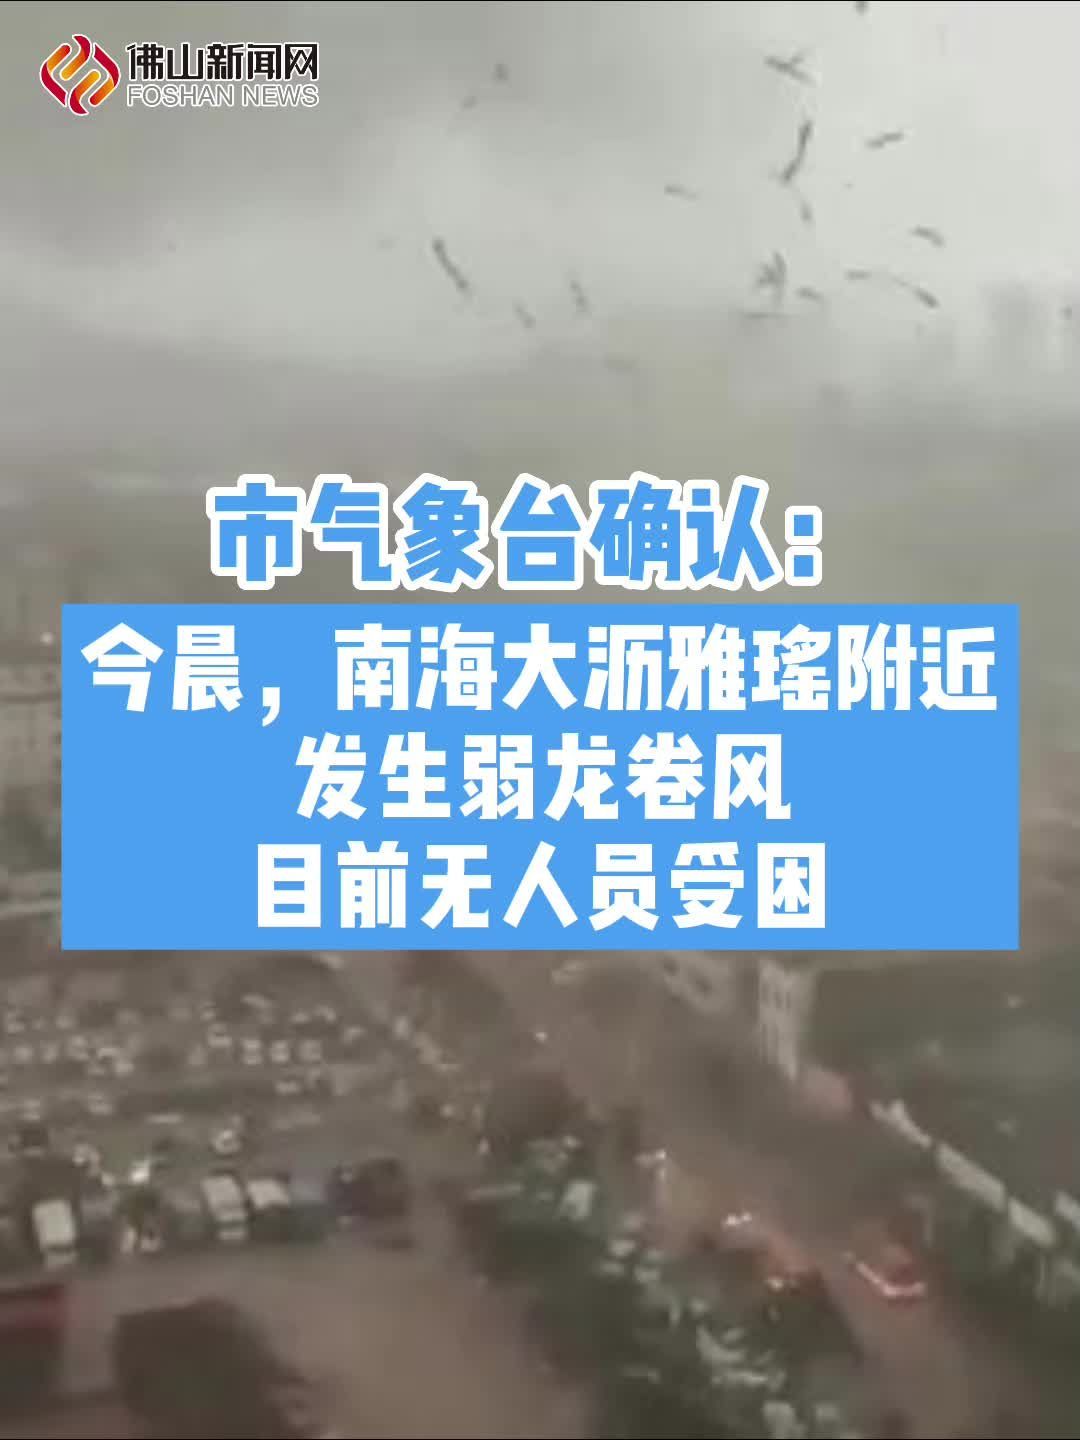 广东佛山龙卷风受灾片区开展综合整治 涉及面积约1000亩-荆楚网-湖北日报网